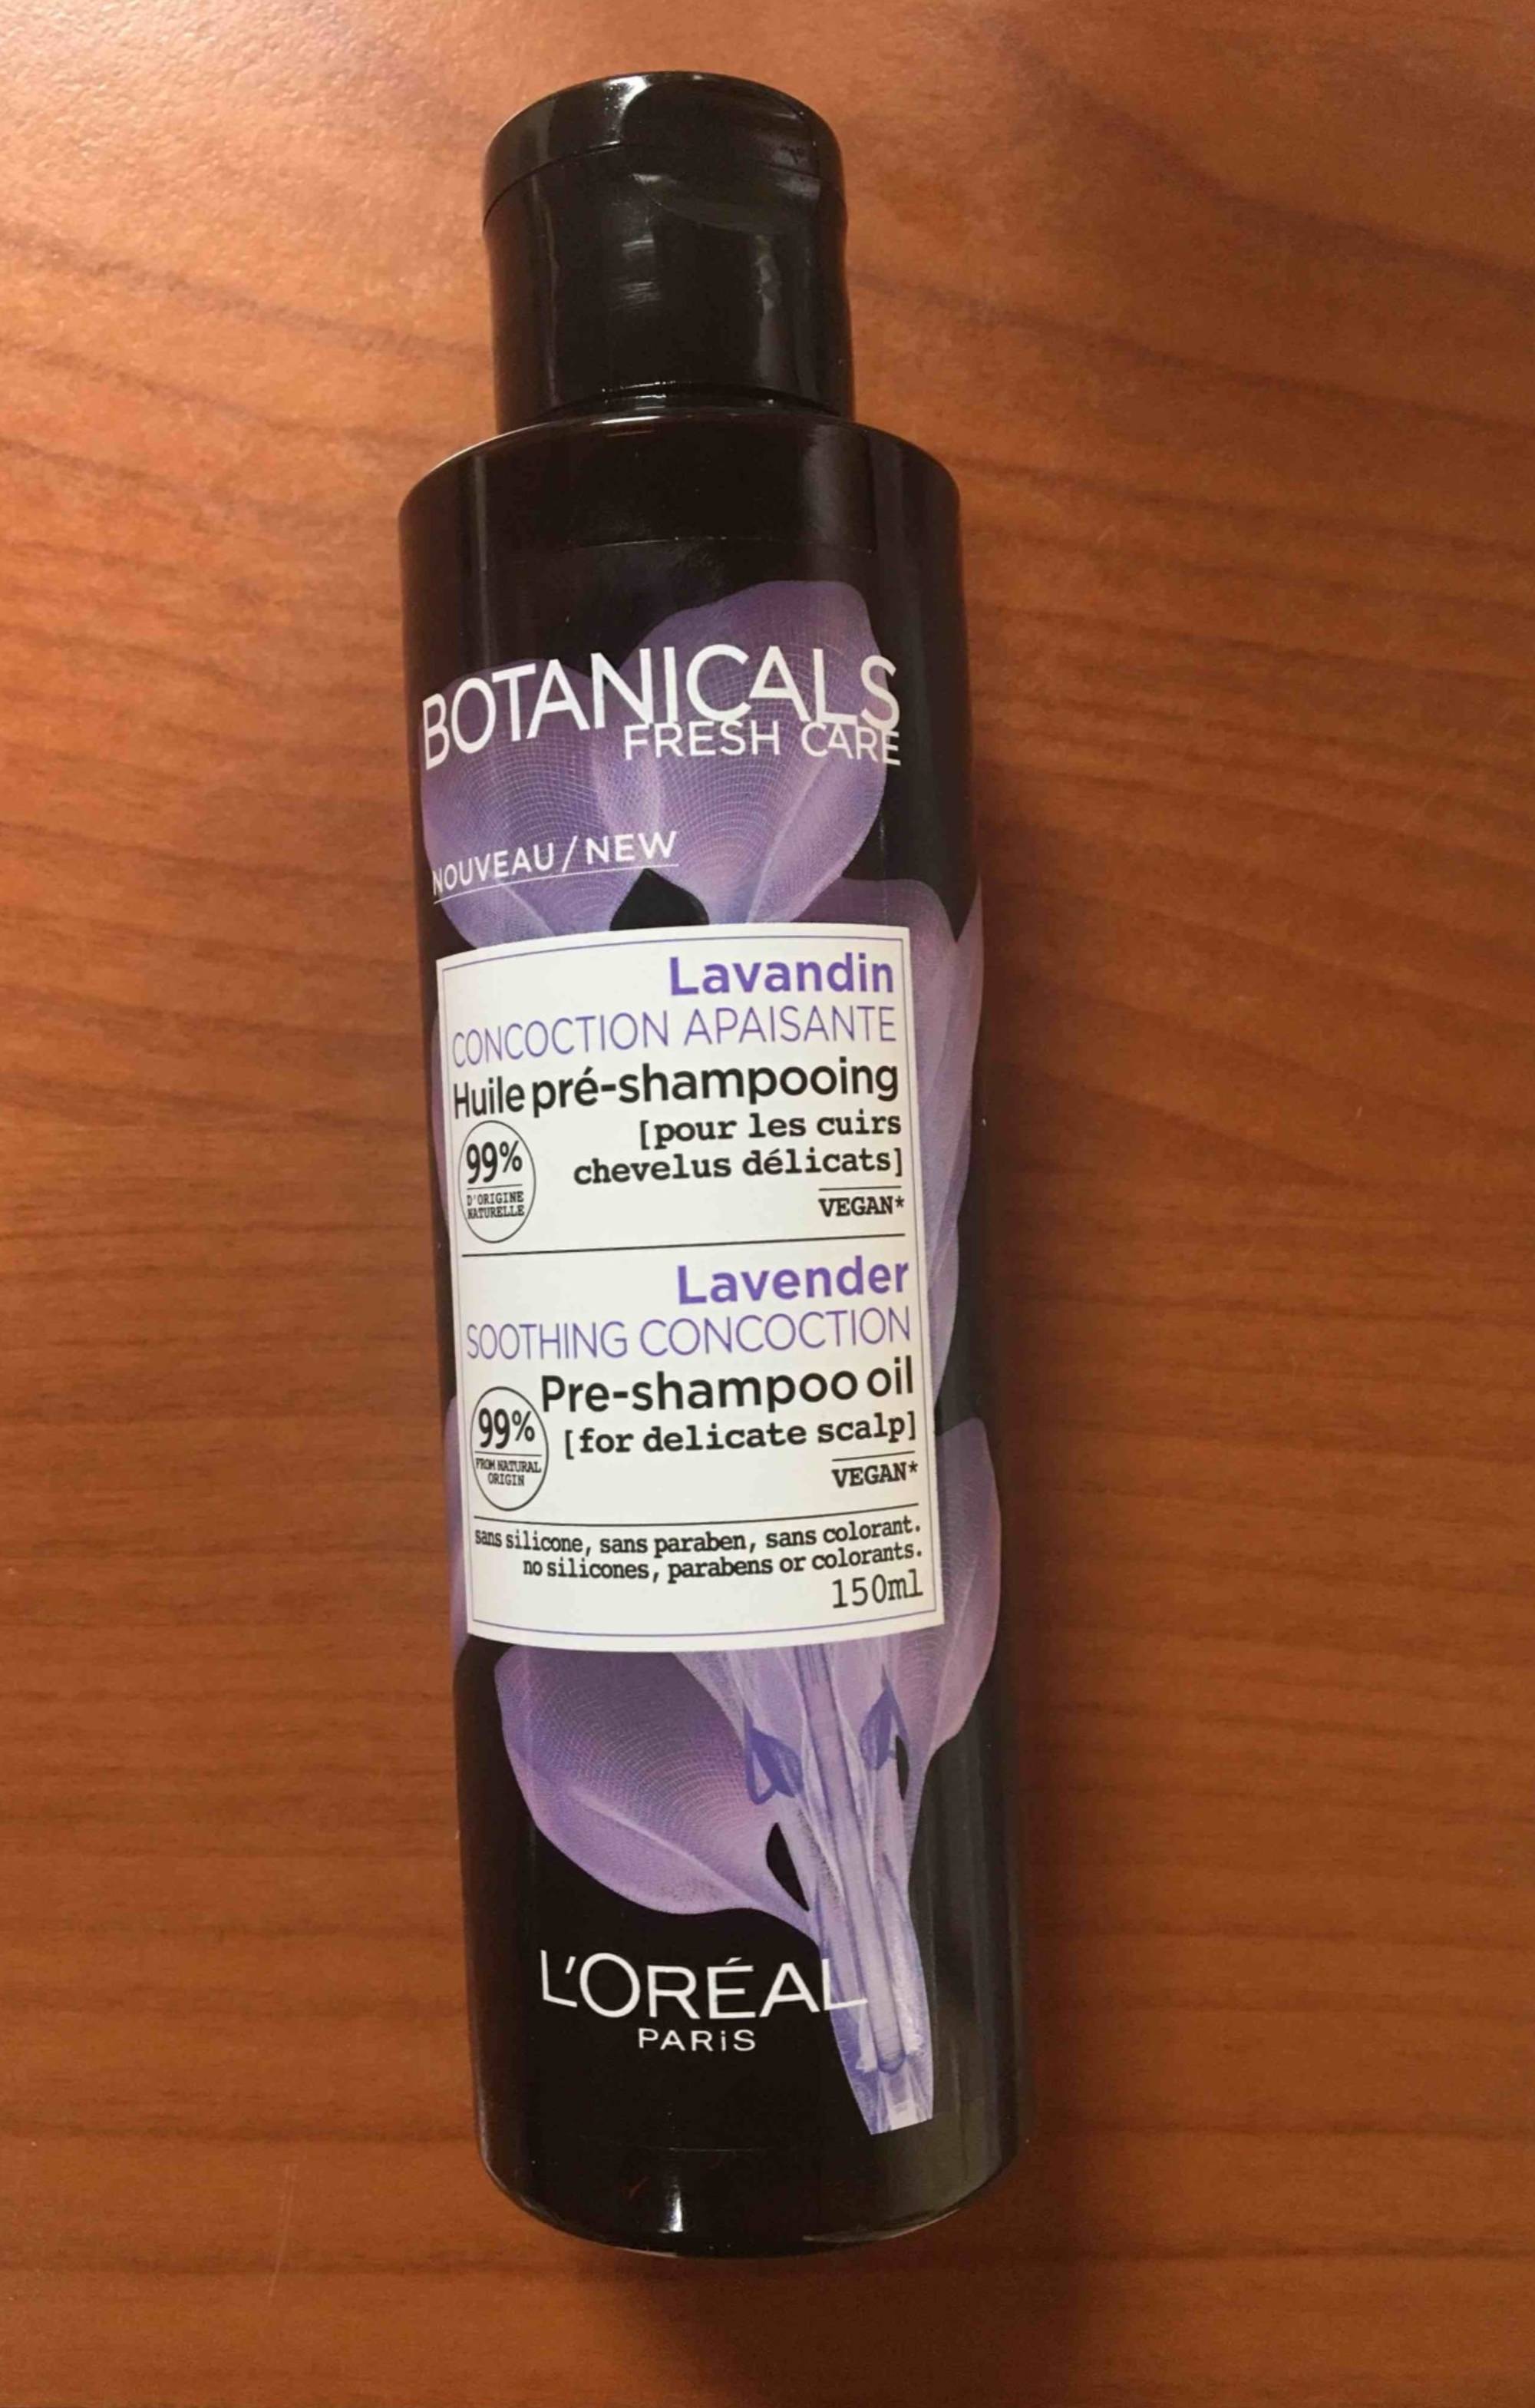 L'ORÉAL - Botanicals fresh care - Huile pré-shampooing lavandin